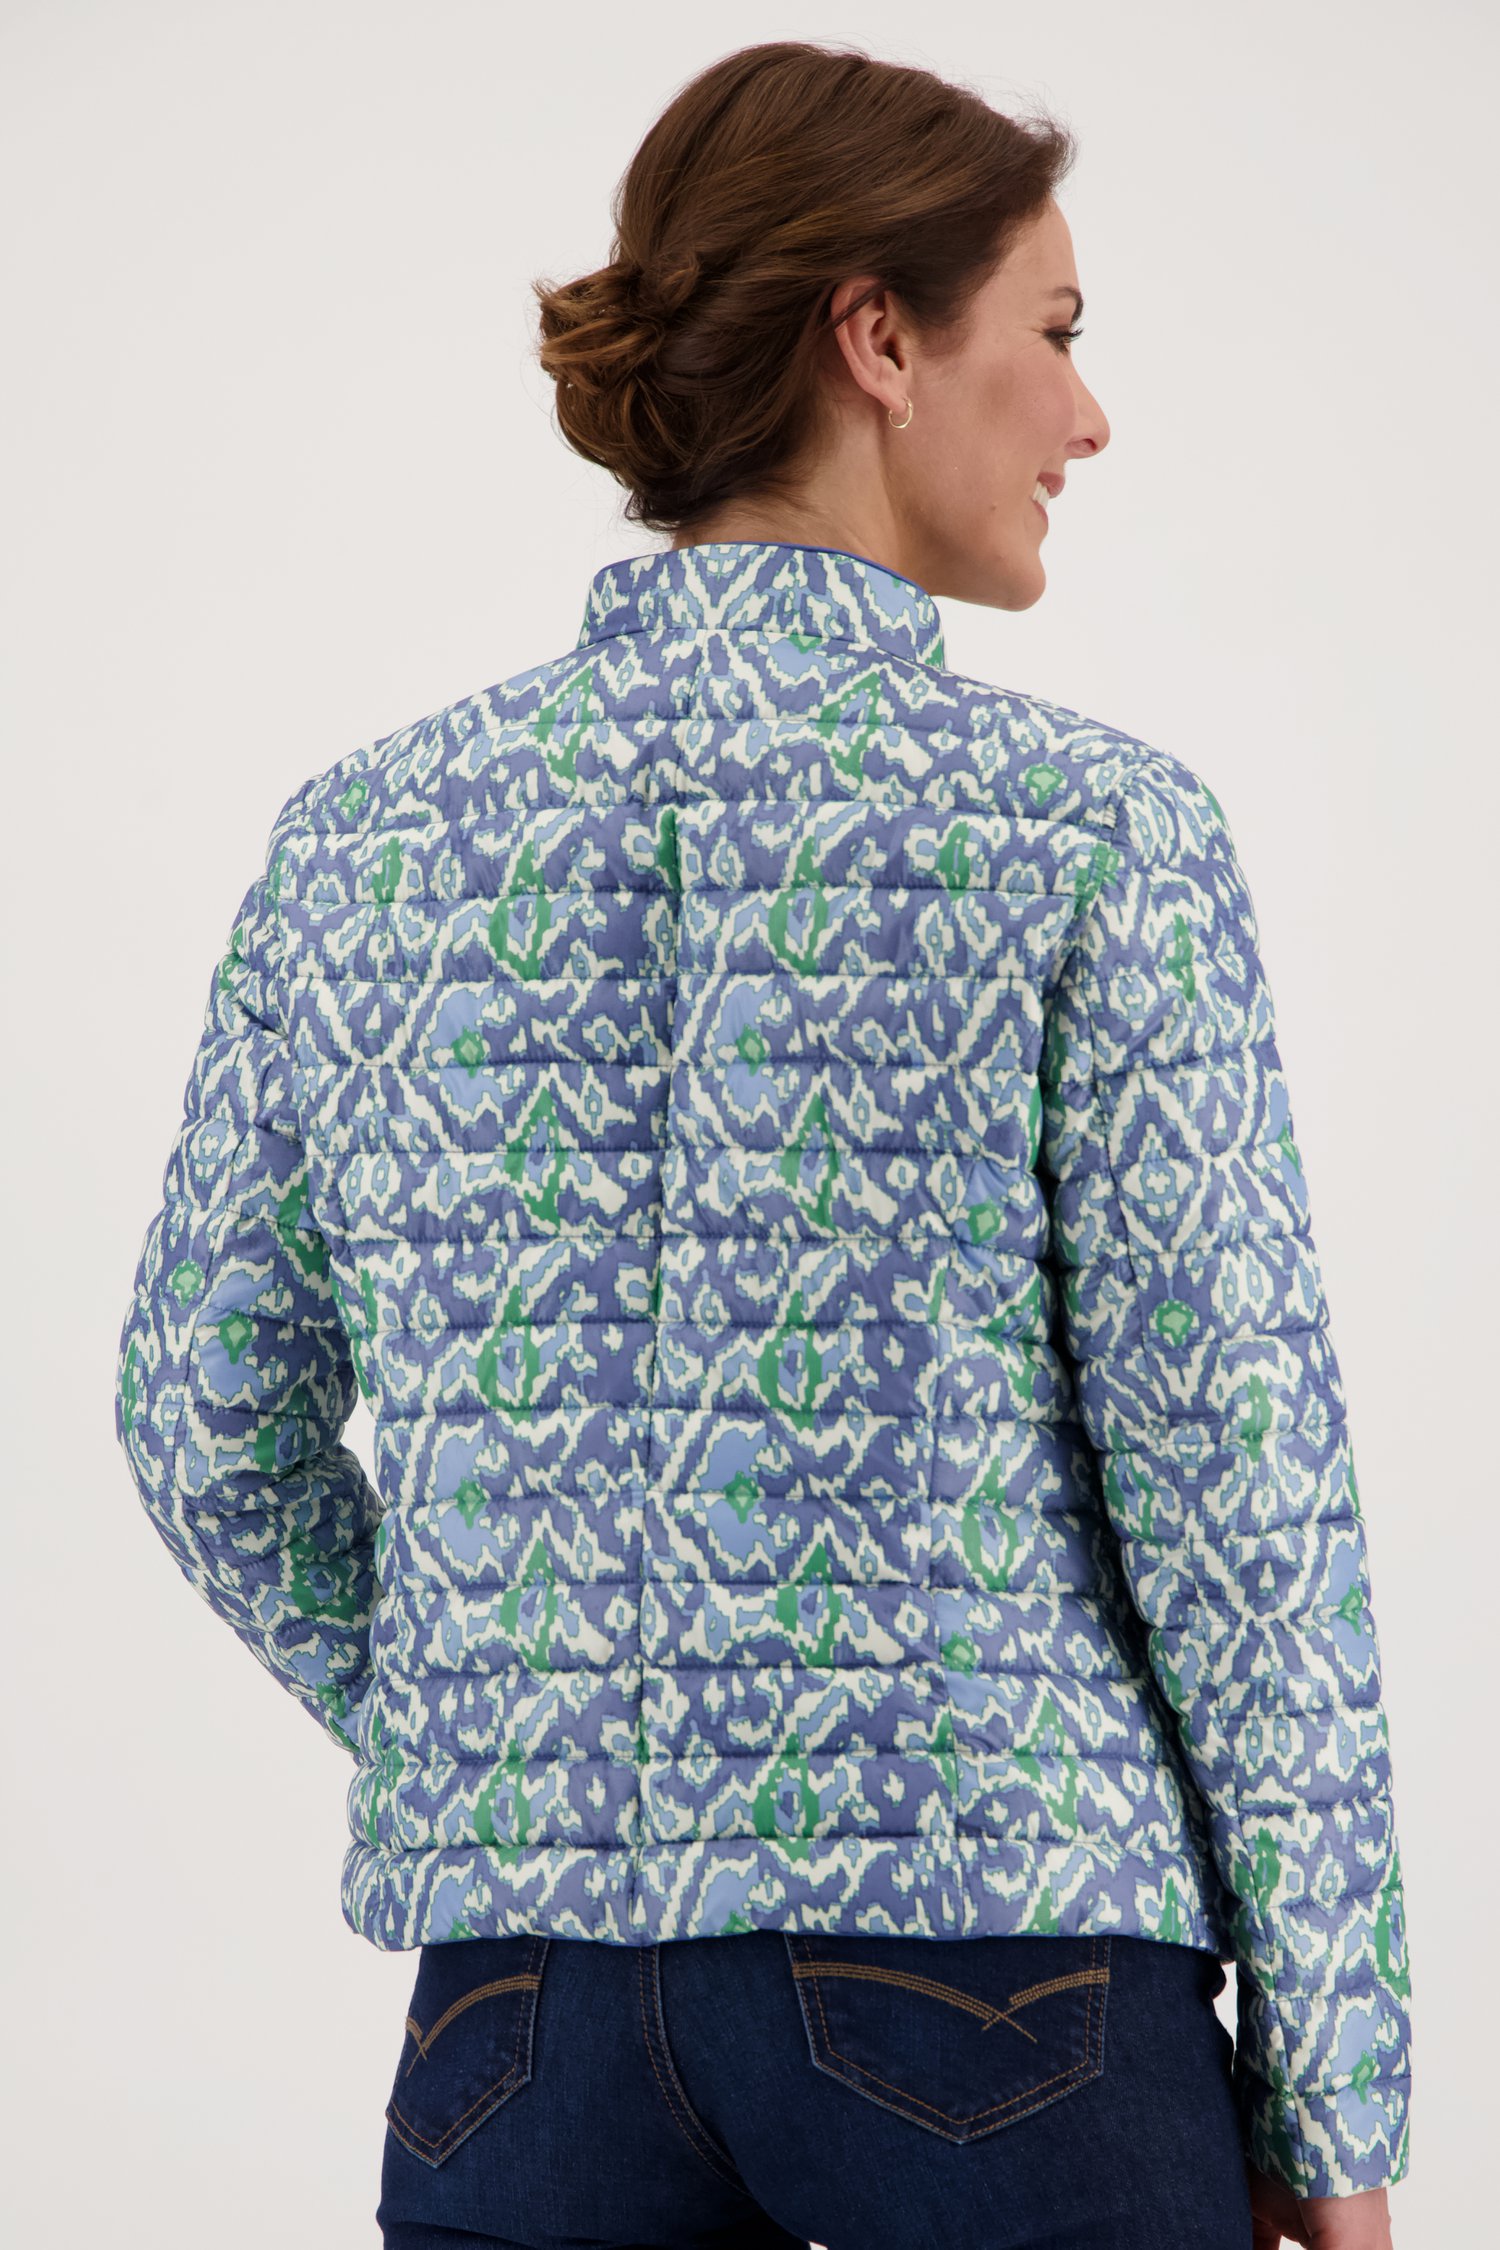 Blauwe omkeerbare gewatteerde jas van Barbara Lebek voor Dames